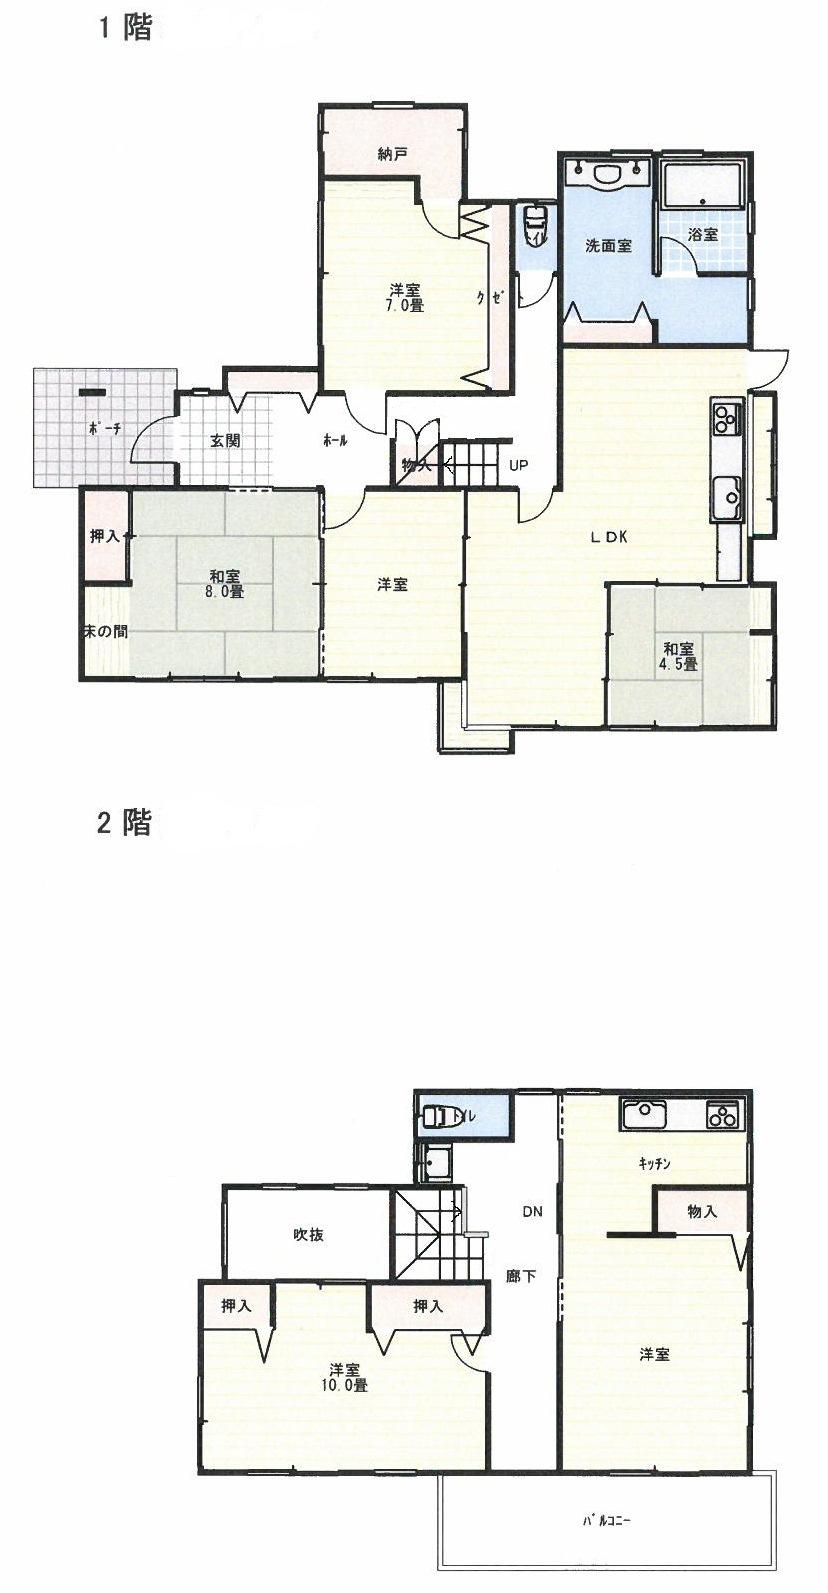 Floor plan. 26.5 million yen, 6LDK, Land area 314.06 sq m , Building area 172.23 sq m